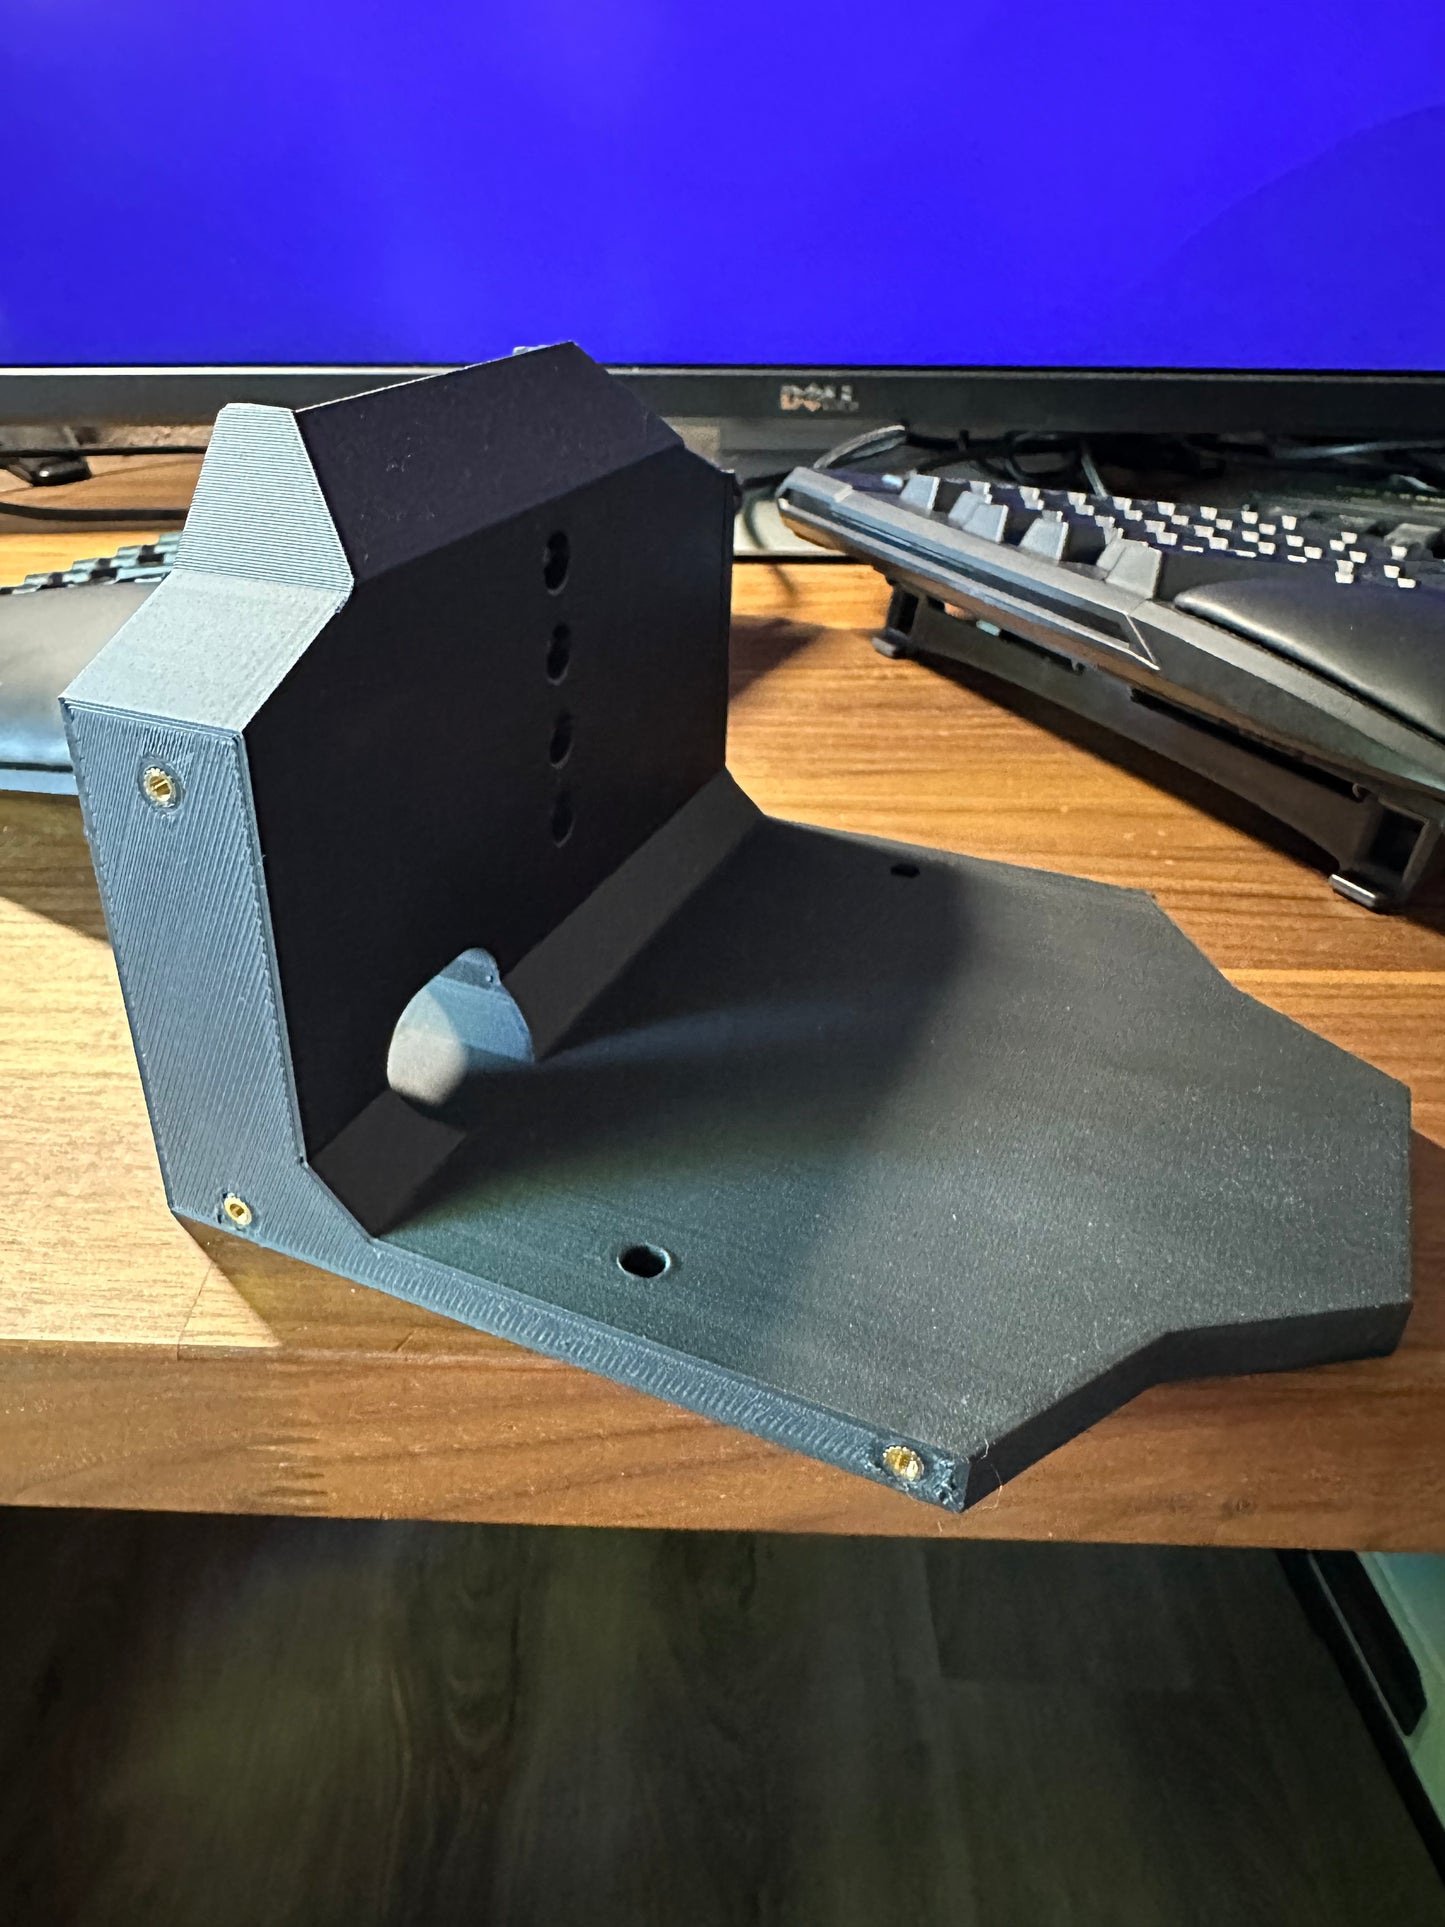 VKB Gladiator Desk Mount - 3D Printed WITH HARDWARE